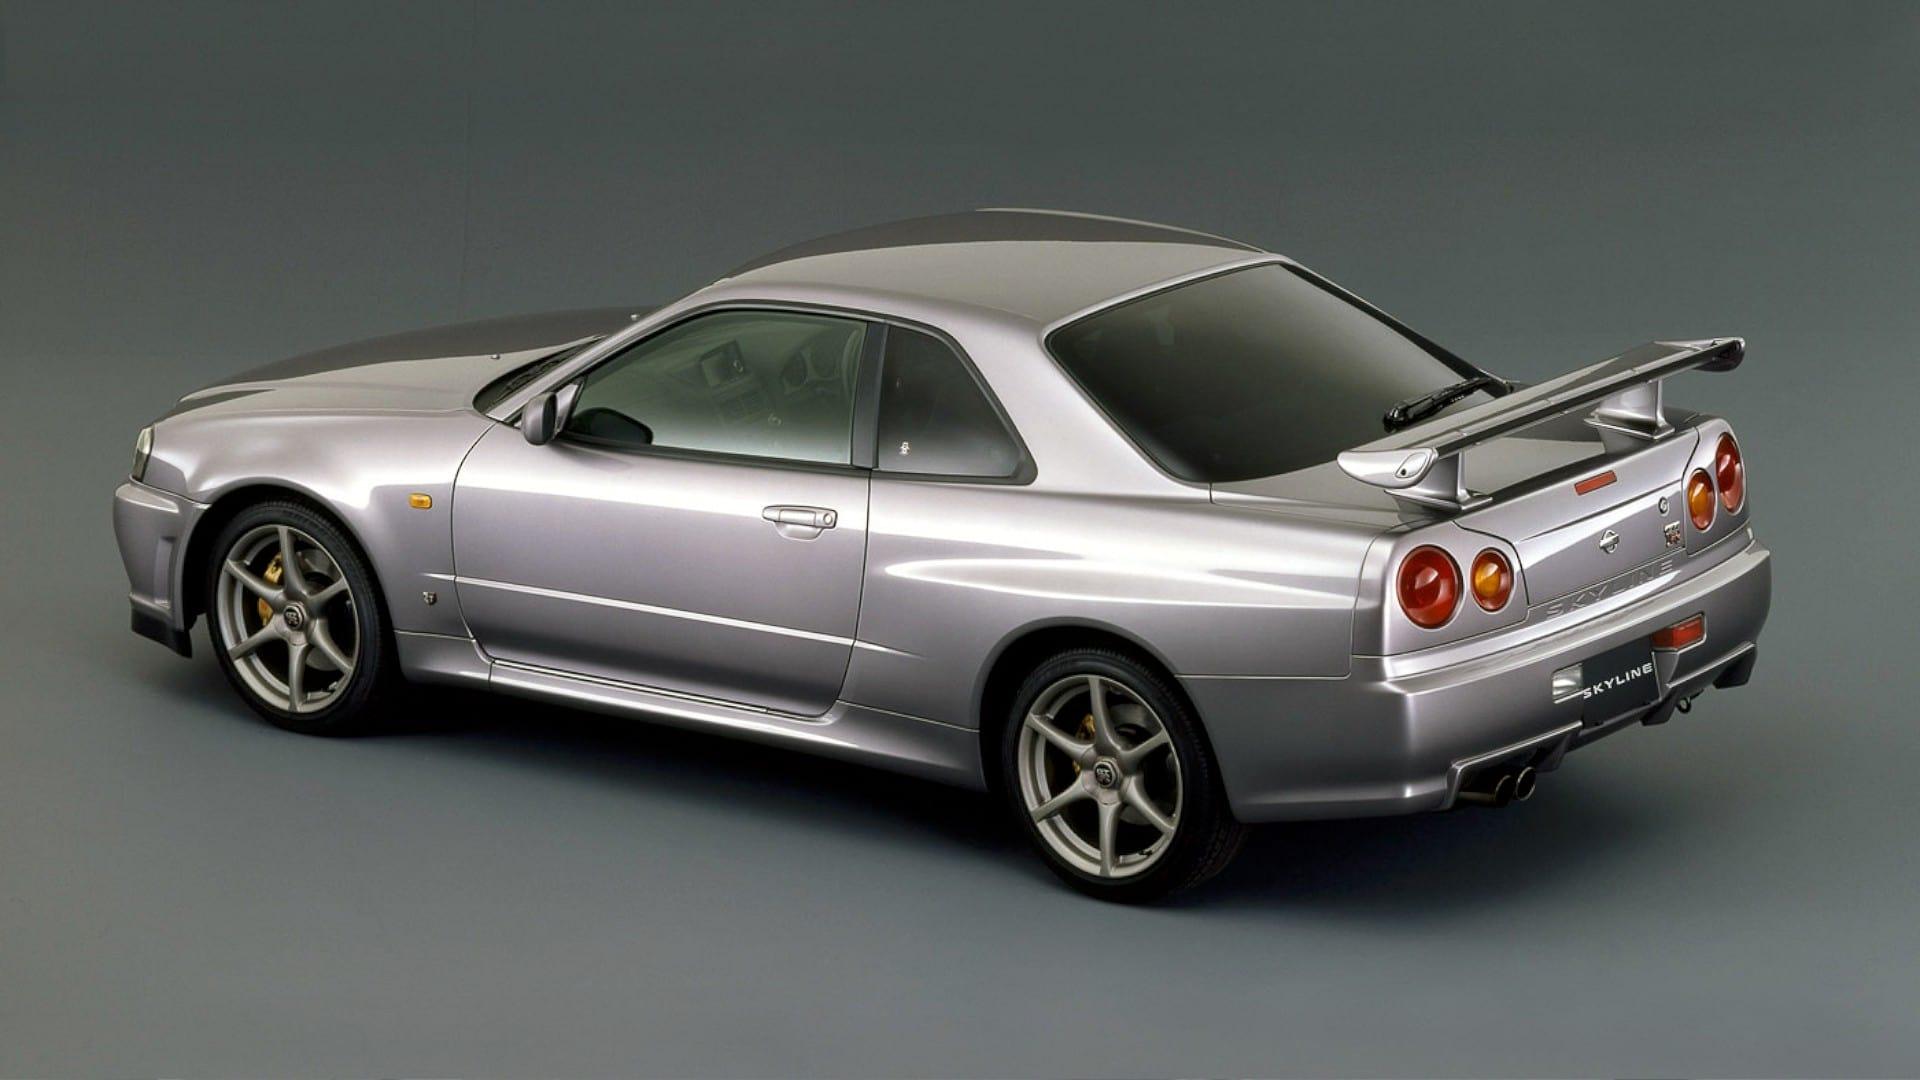 Nissan Skyline GT-R Story backdrop